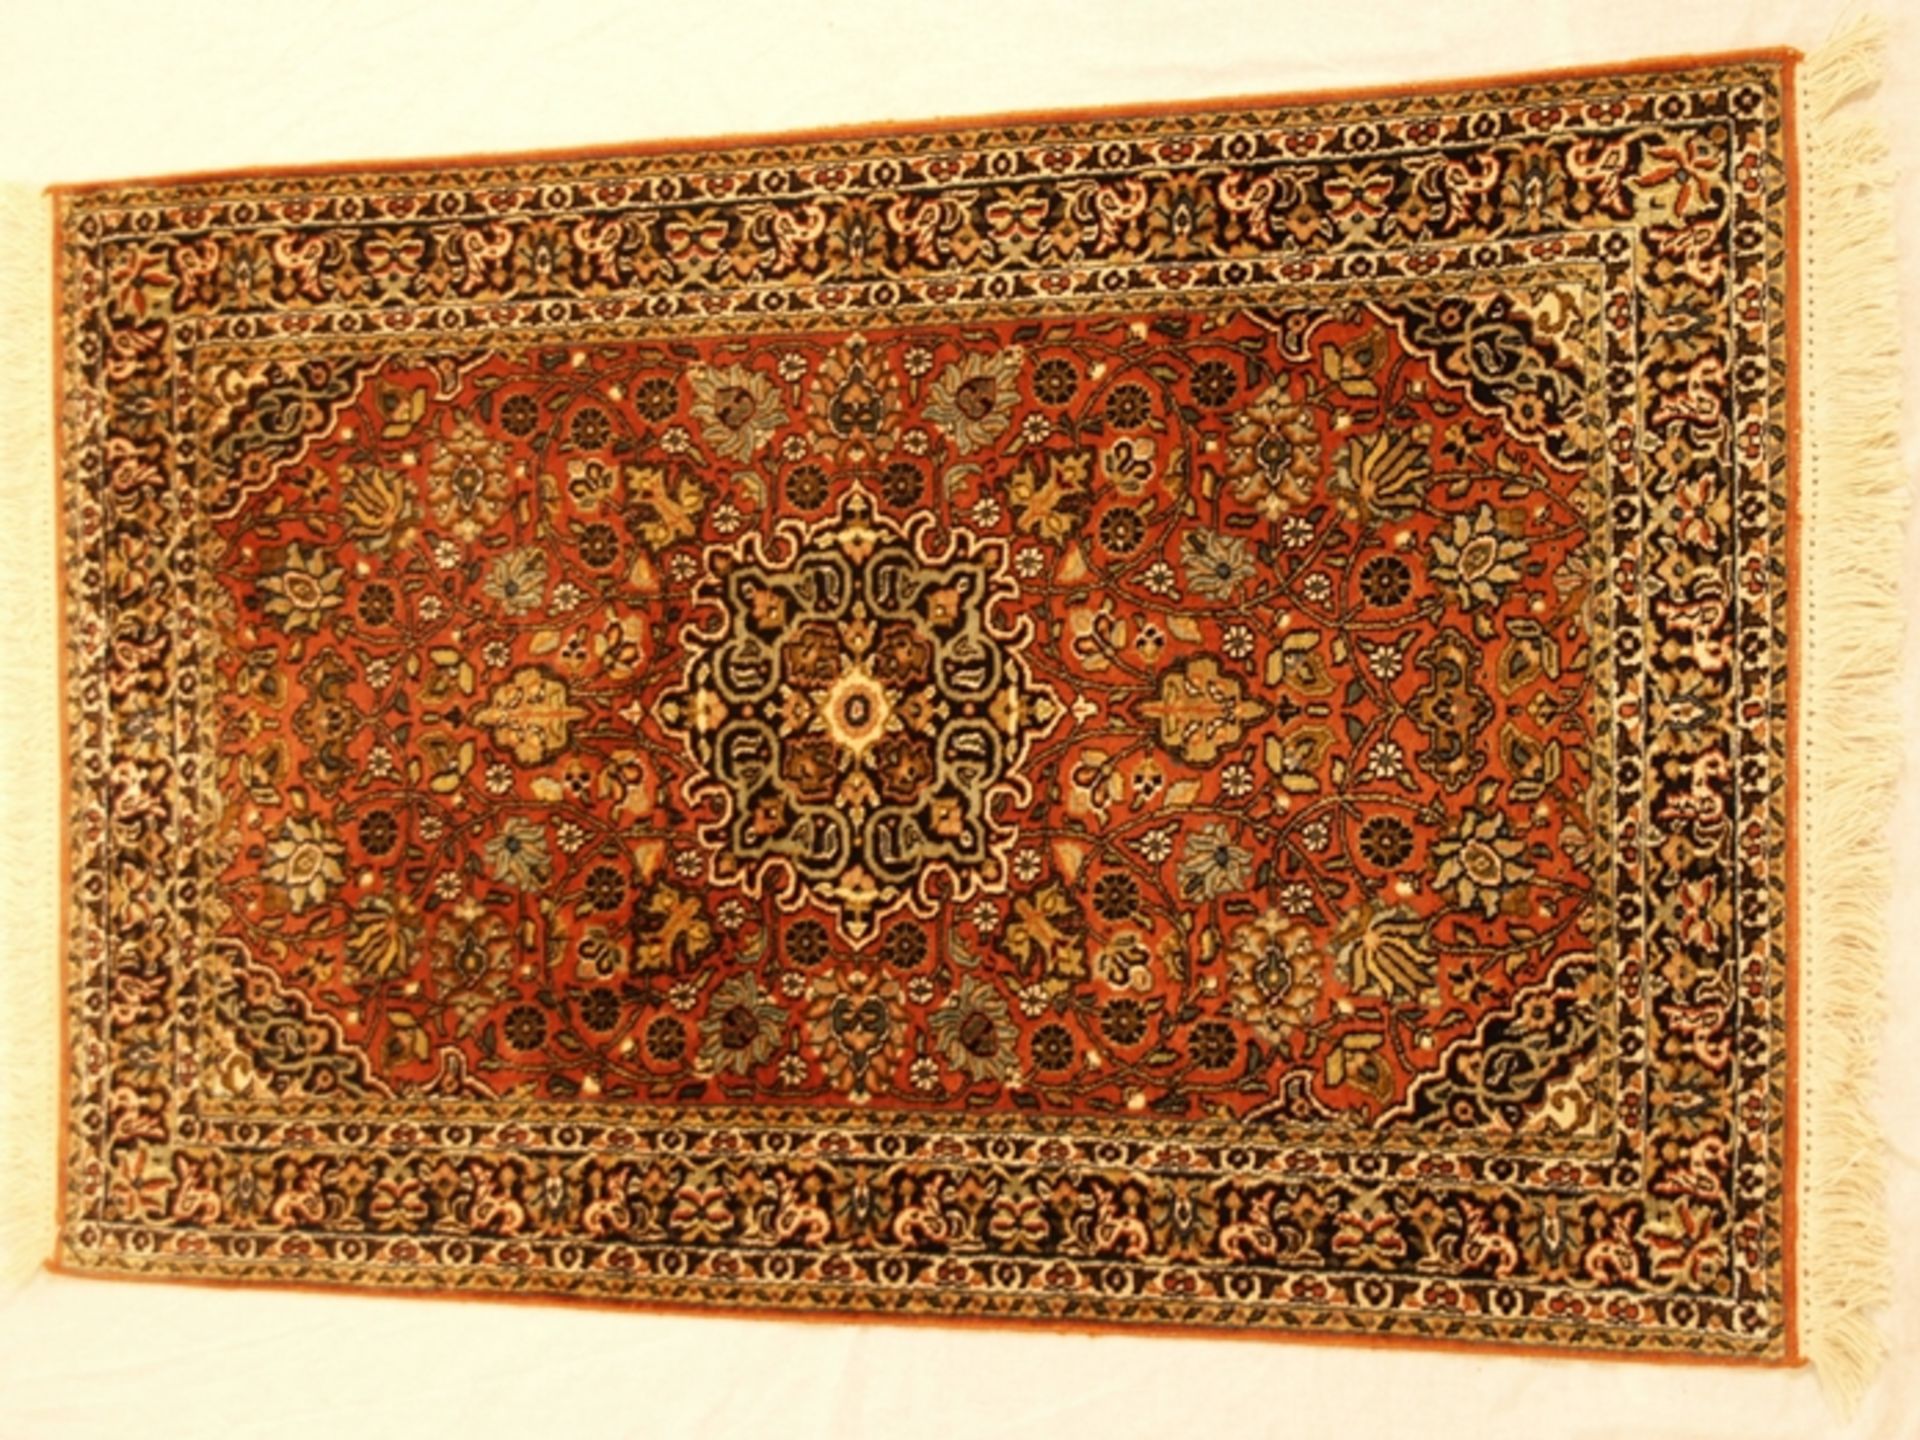 Orientteppich - Kaschmir-Seide auf Wolle, handgeknüpft, Medaillon ziegelfarbig, florales Muster,c a